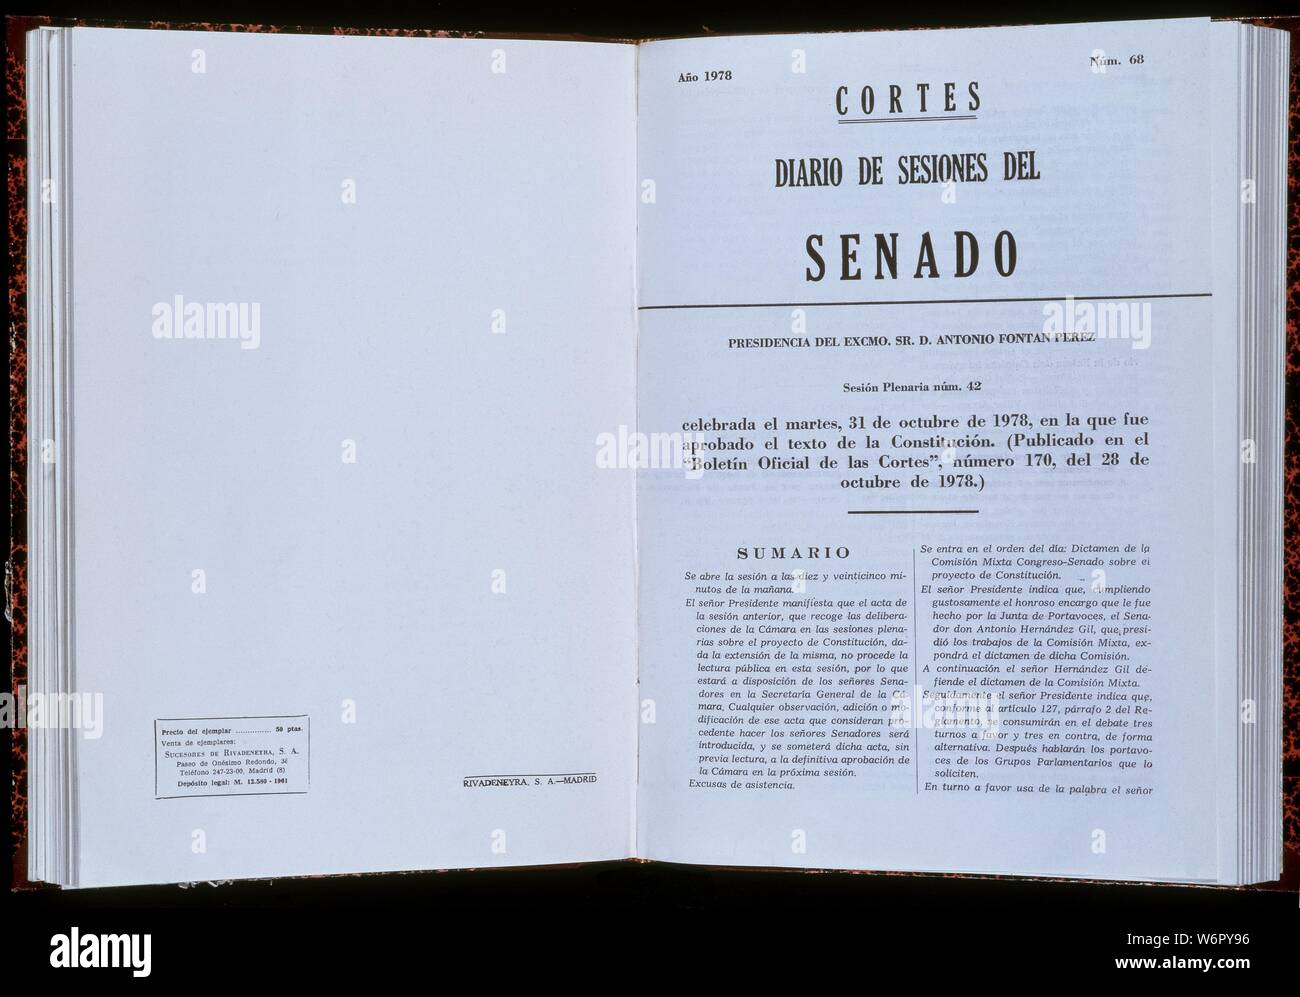 DIARIO DE SESIONES DEL SENADO NUMERO 68 DE 31 DE MAYO DE 1978 - APROBACION DE LA CONSTITUCION. Lage: SENADO - BIBLIOTECA - coleccion. MADRID. Stockfoto